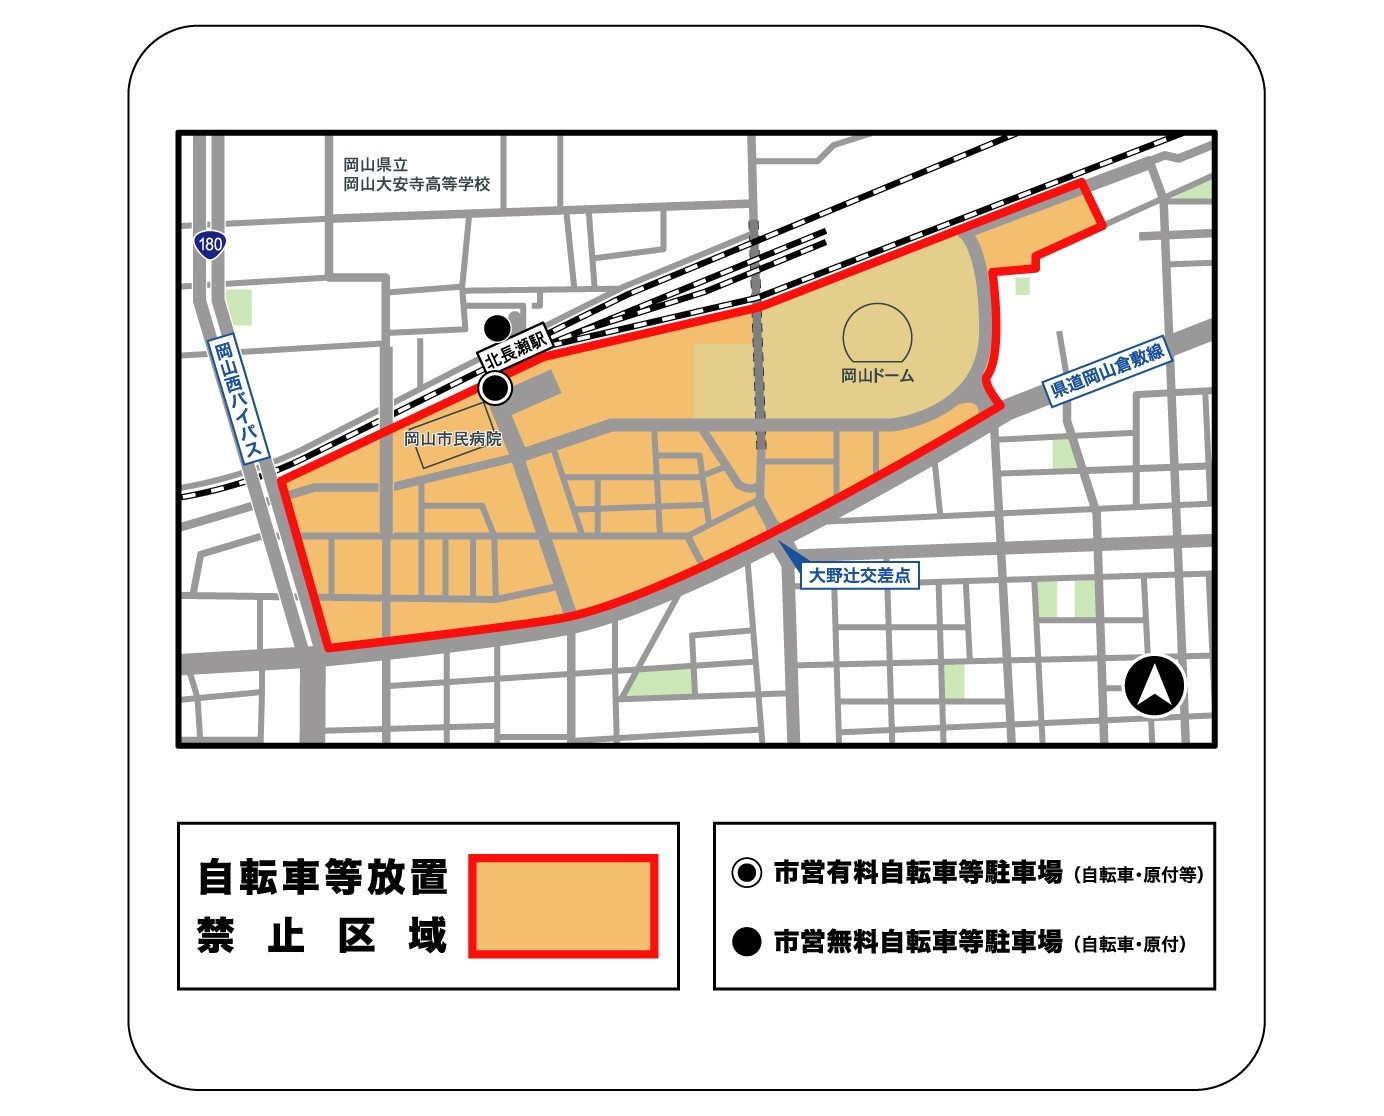 北長瀬駅周辺の自転車等放置禁止区域並びに自転車等駐車場の位置図